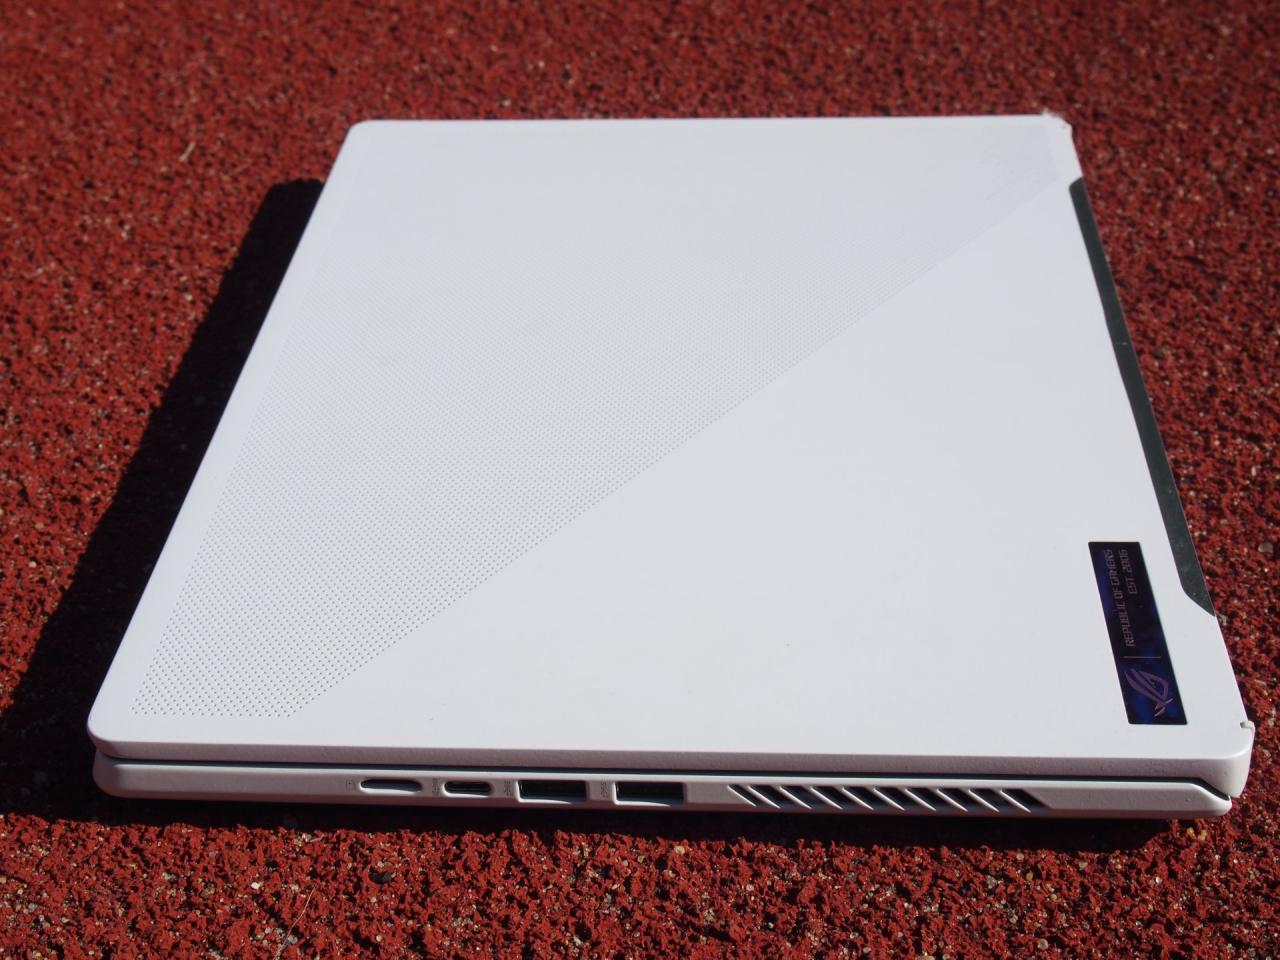 Asus ROG Zephyrus G14 2022 - ultramobilny laptop, który sprosta każdej grze